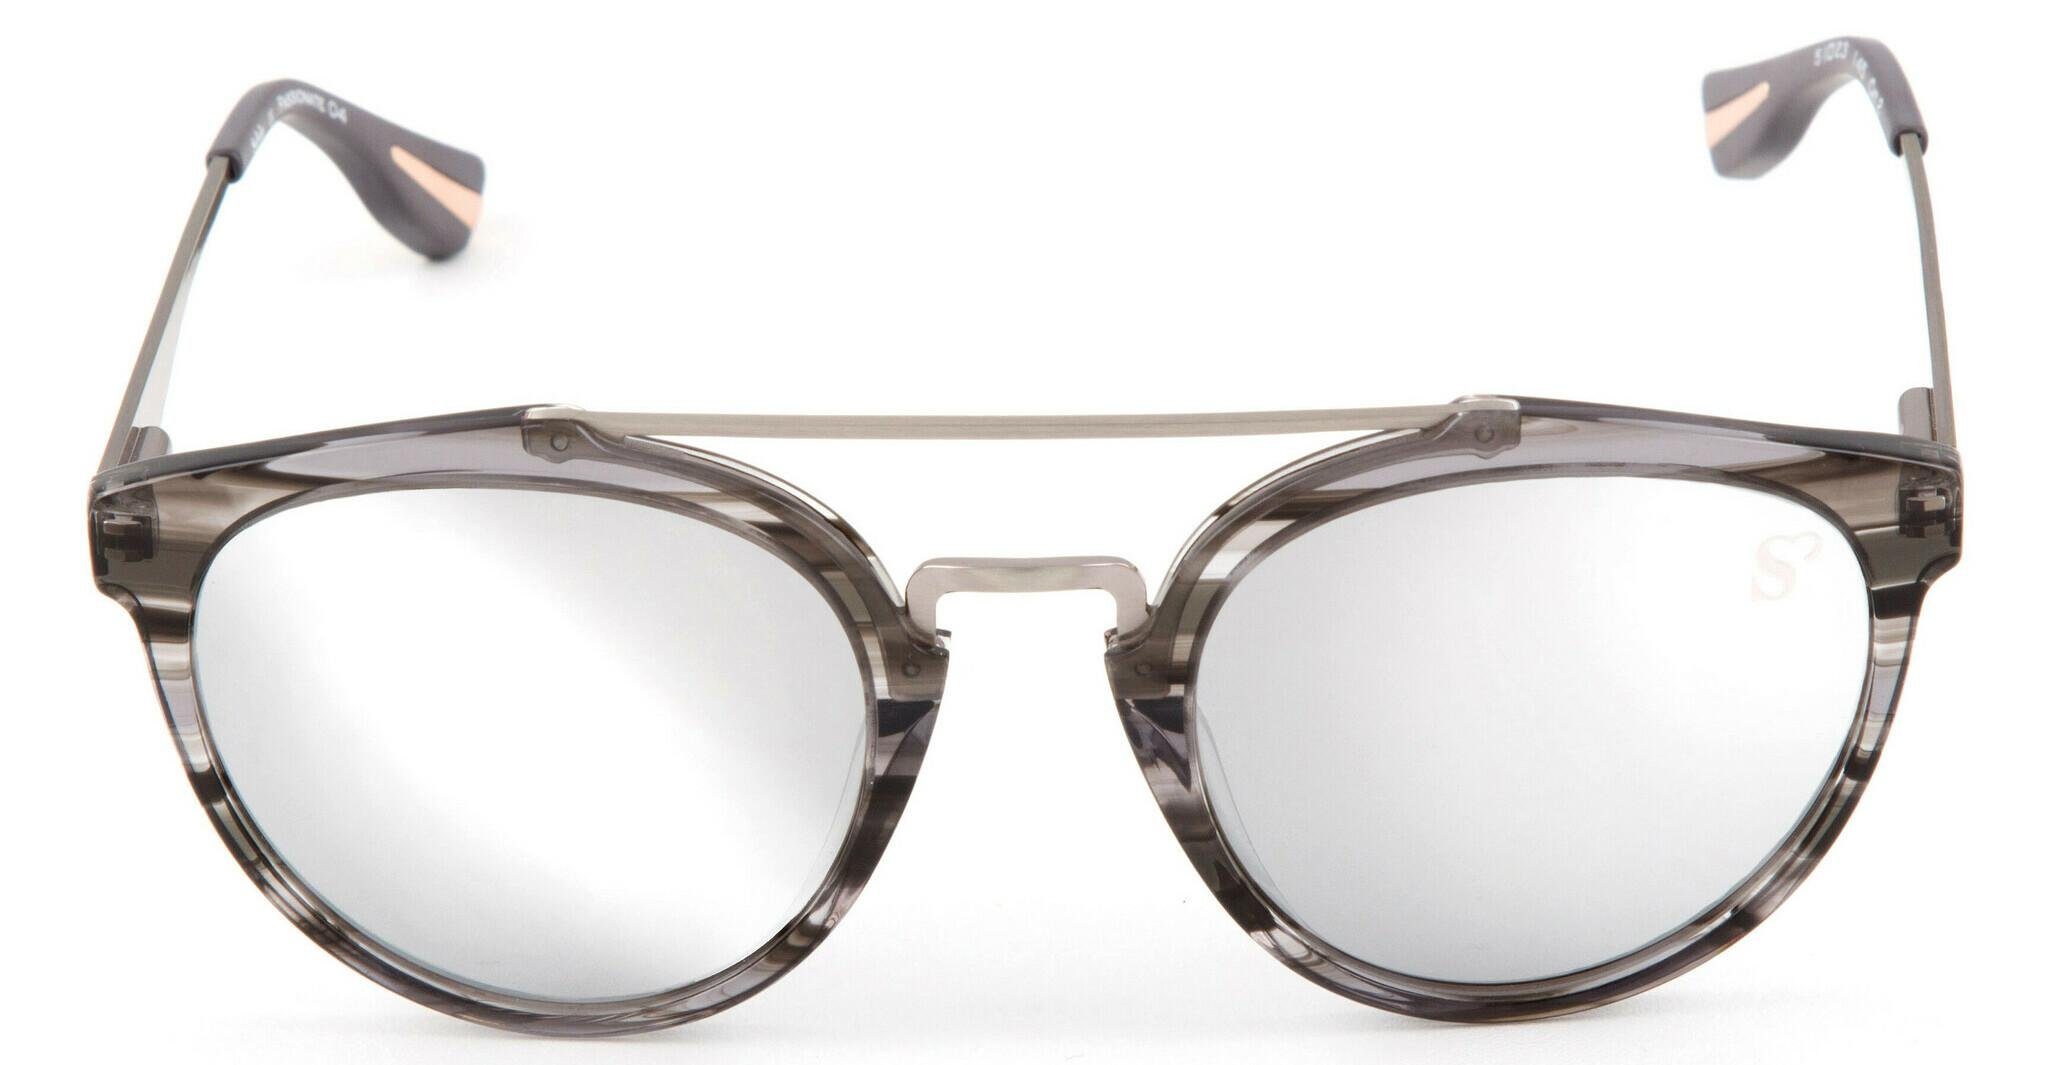 Voller Informationen! Sylvie Optics Sonnenbrille Passionate braun